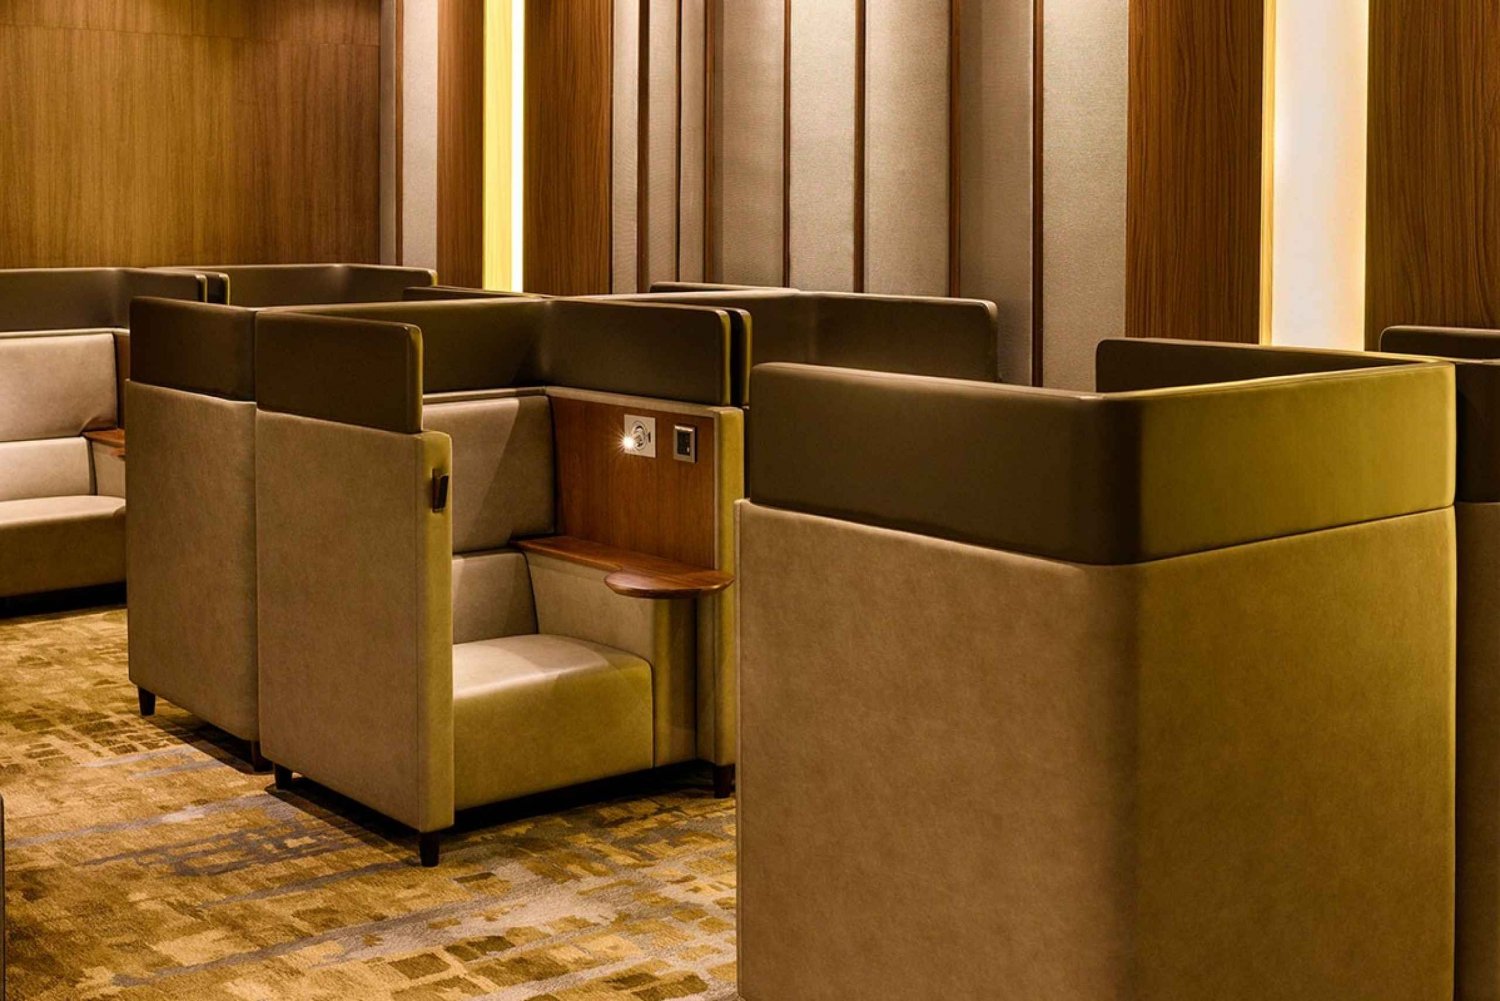 Dammam: King Fahd Airport Premium Lounge Access